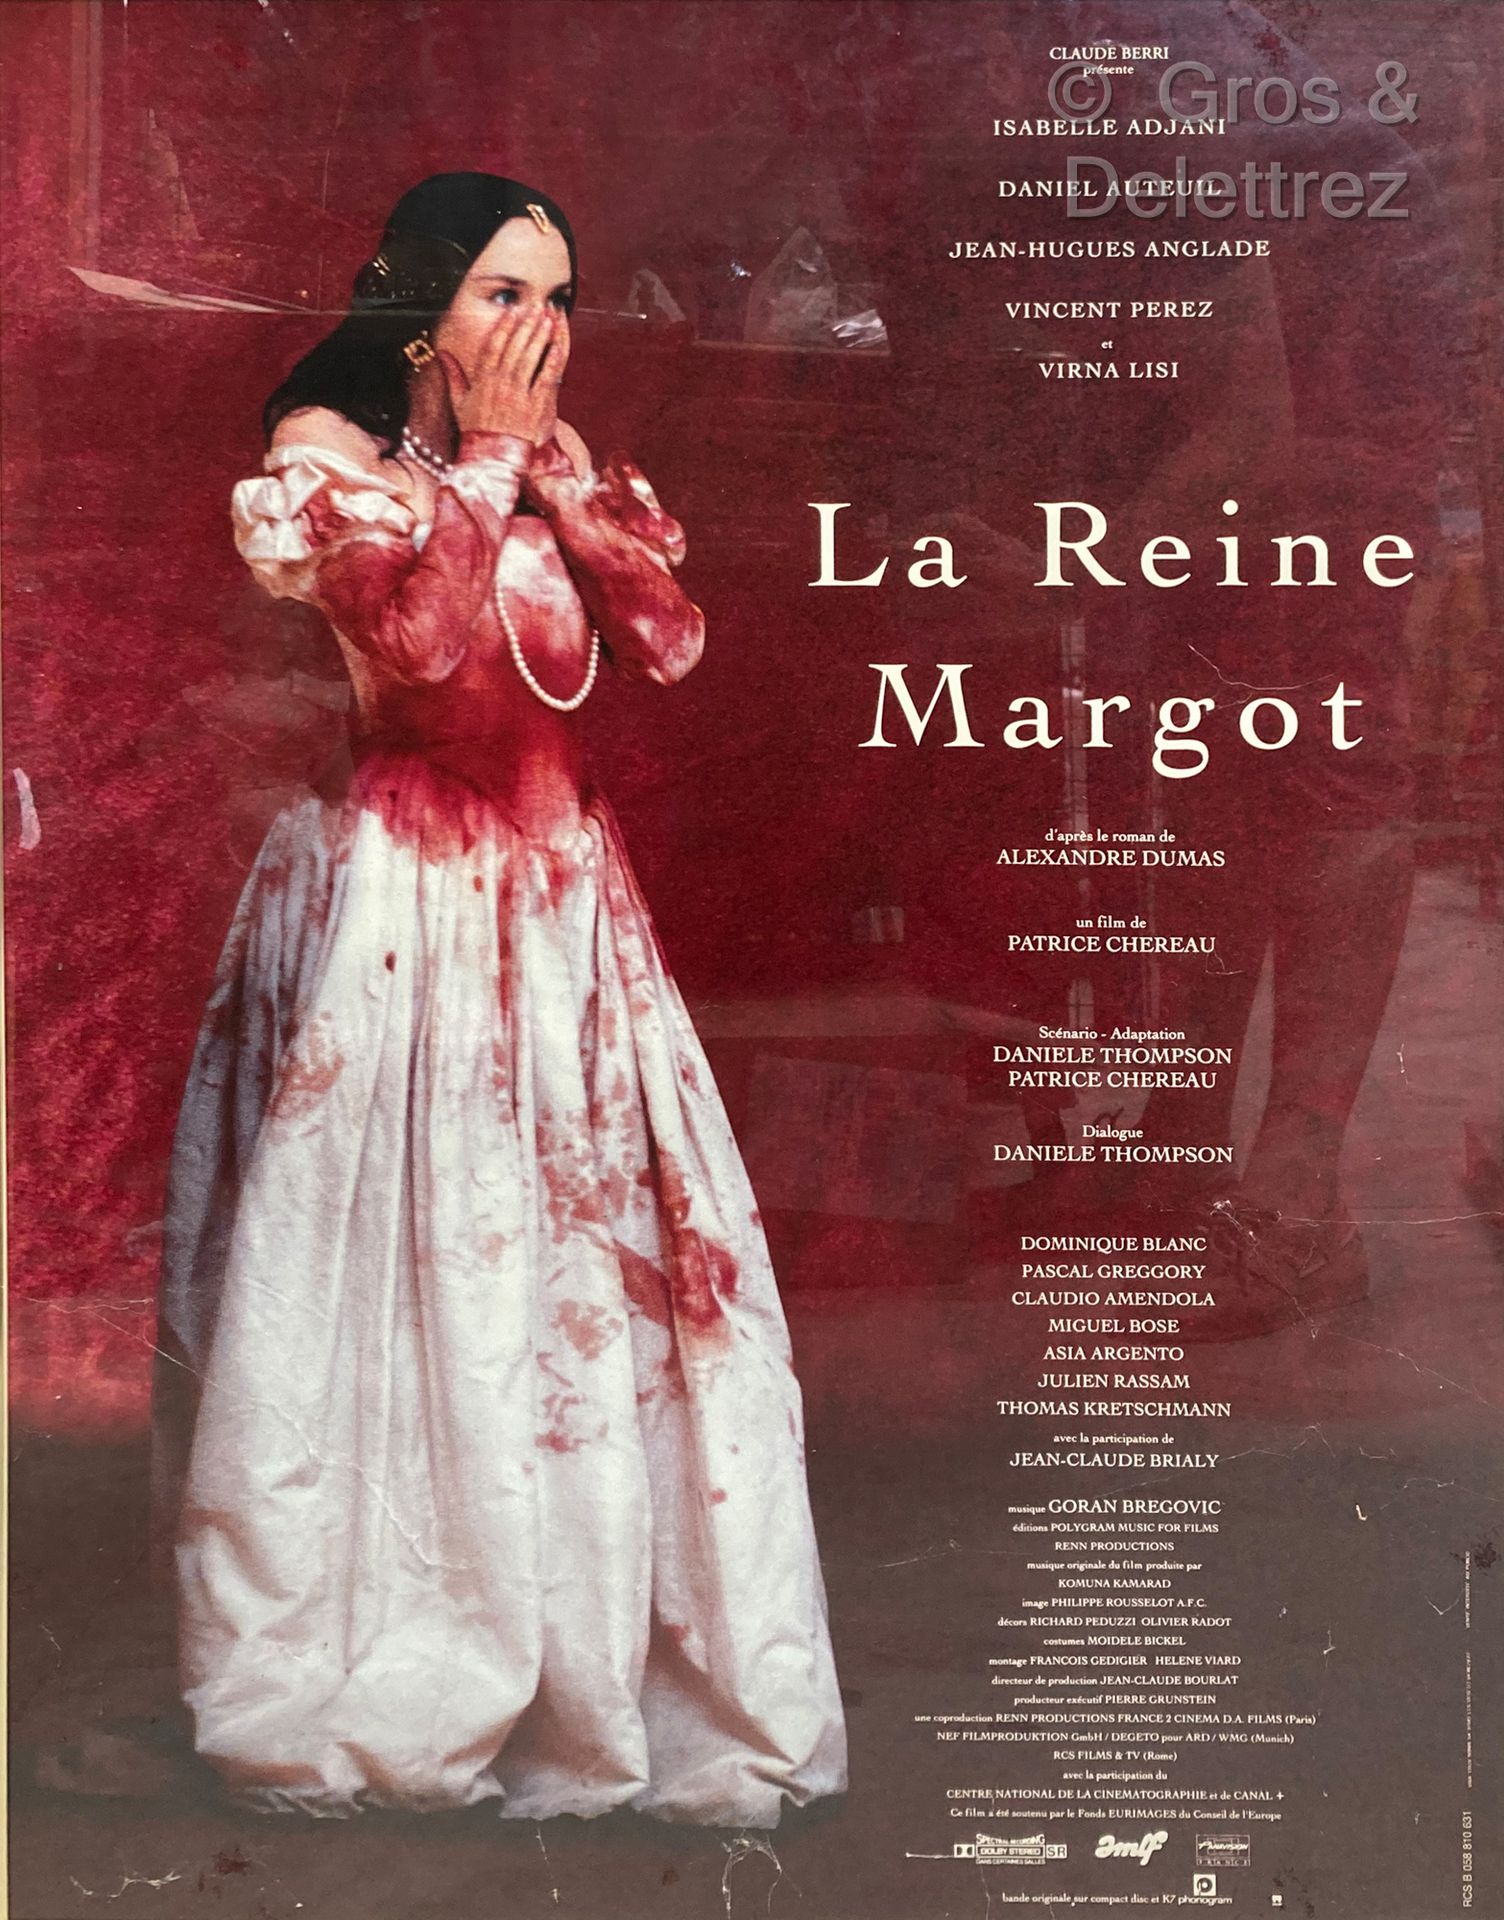 Patrice Chereau LA REINE MARGOT

Affiche de cinéma

79 x 59 cm sous verre